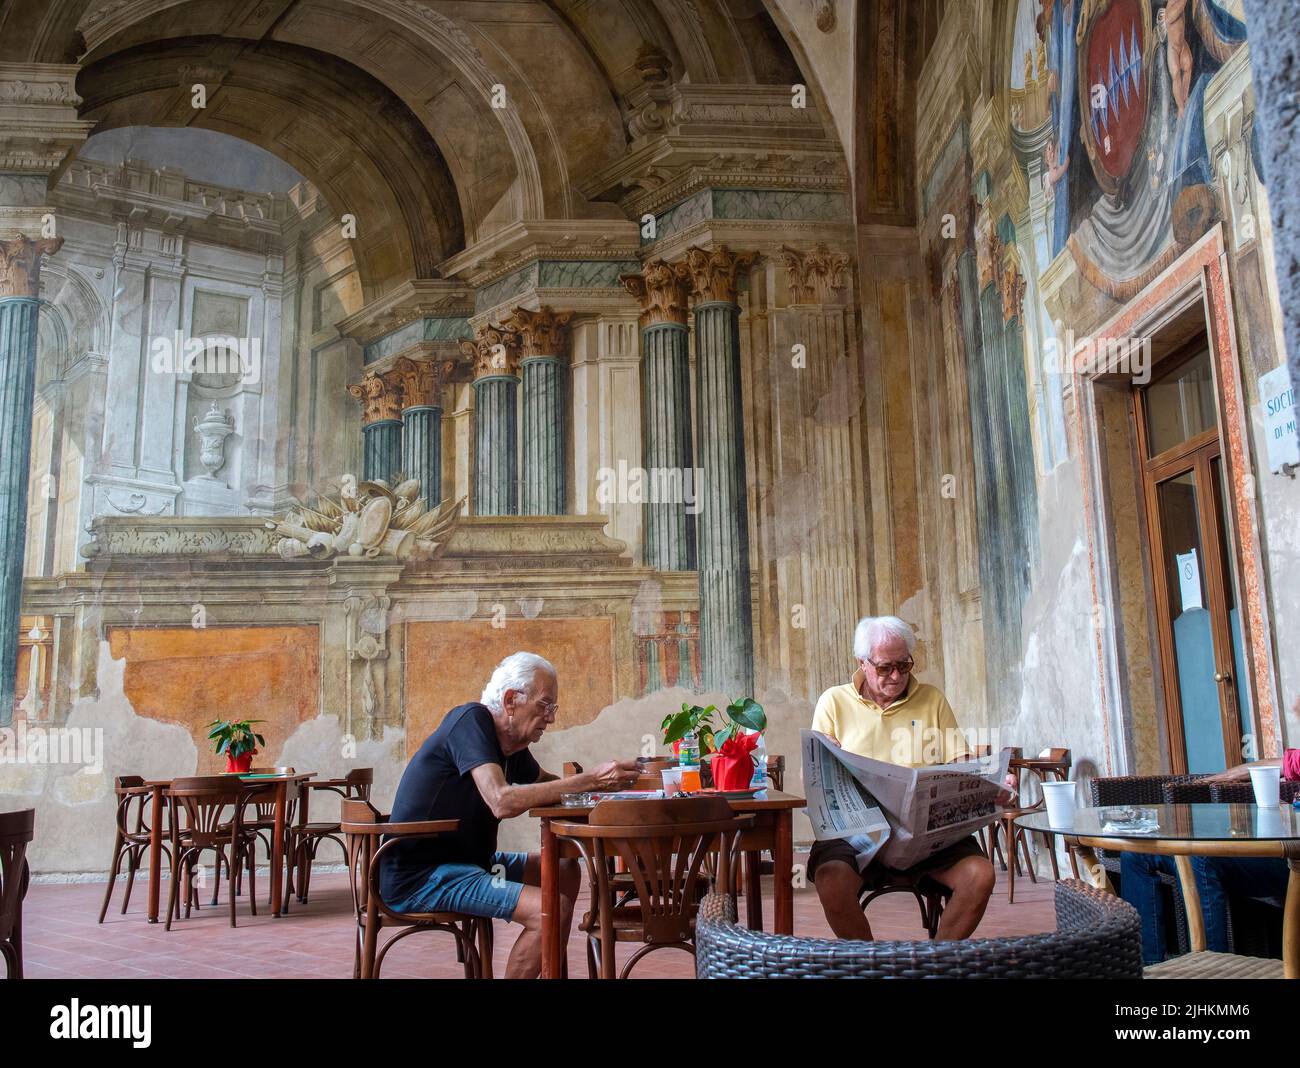 Los caballeros italianos se relajan en Sedile Dominova, un edificio histórico con frescos originales que ahora funciona como un club de hombres en funcionamiento, Sorrento, Italia. Foto de stock